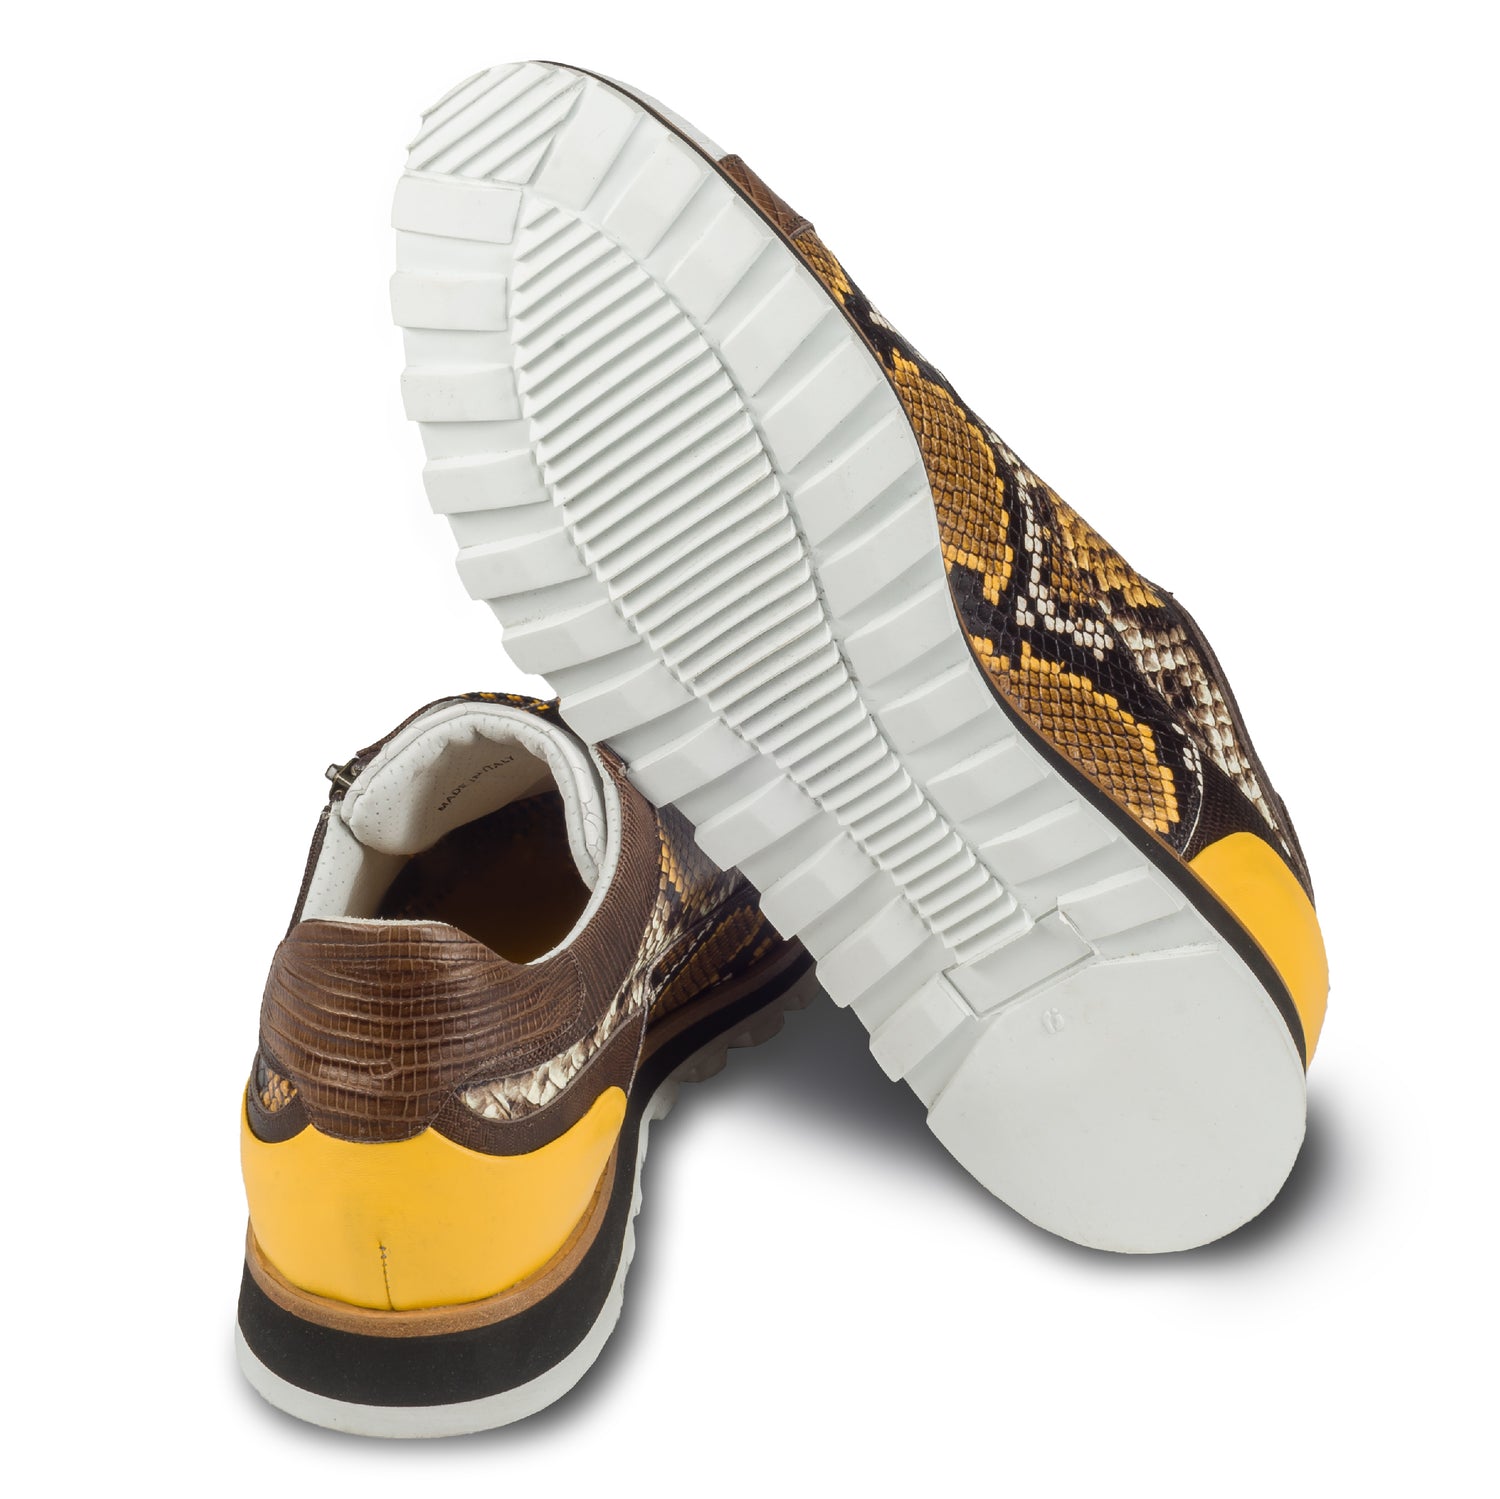 Lorenzi Herren Leder-Sneaker in weiß / gelb / braun mit Schlangen-Prägung. Handgefertigt. Ansicht der Ferse und Sohlenunterseite. 